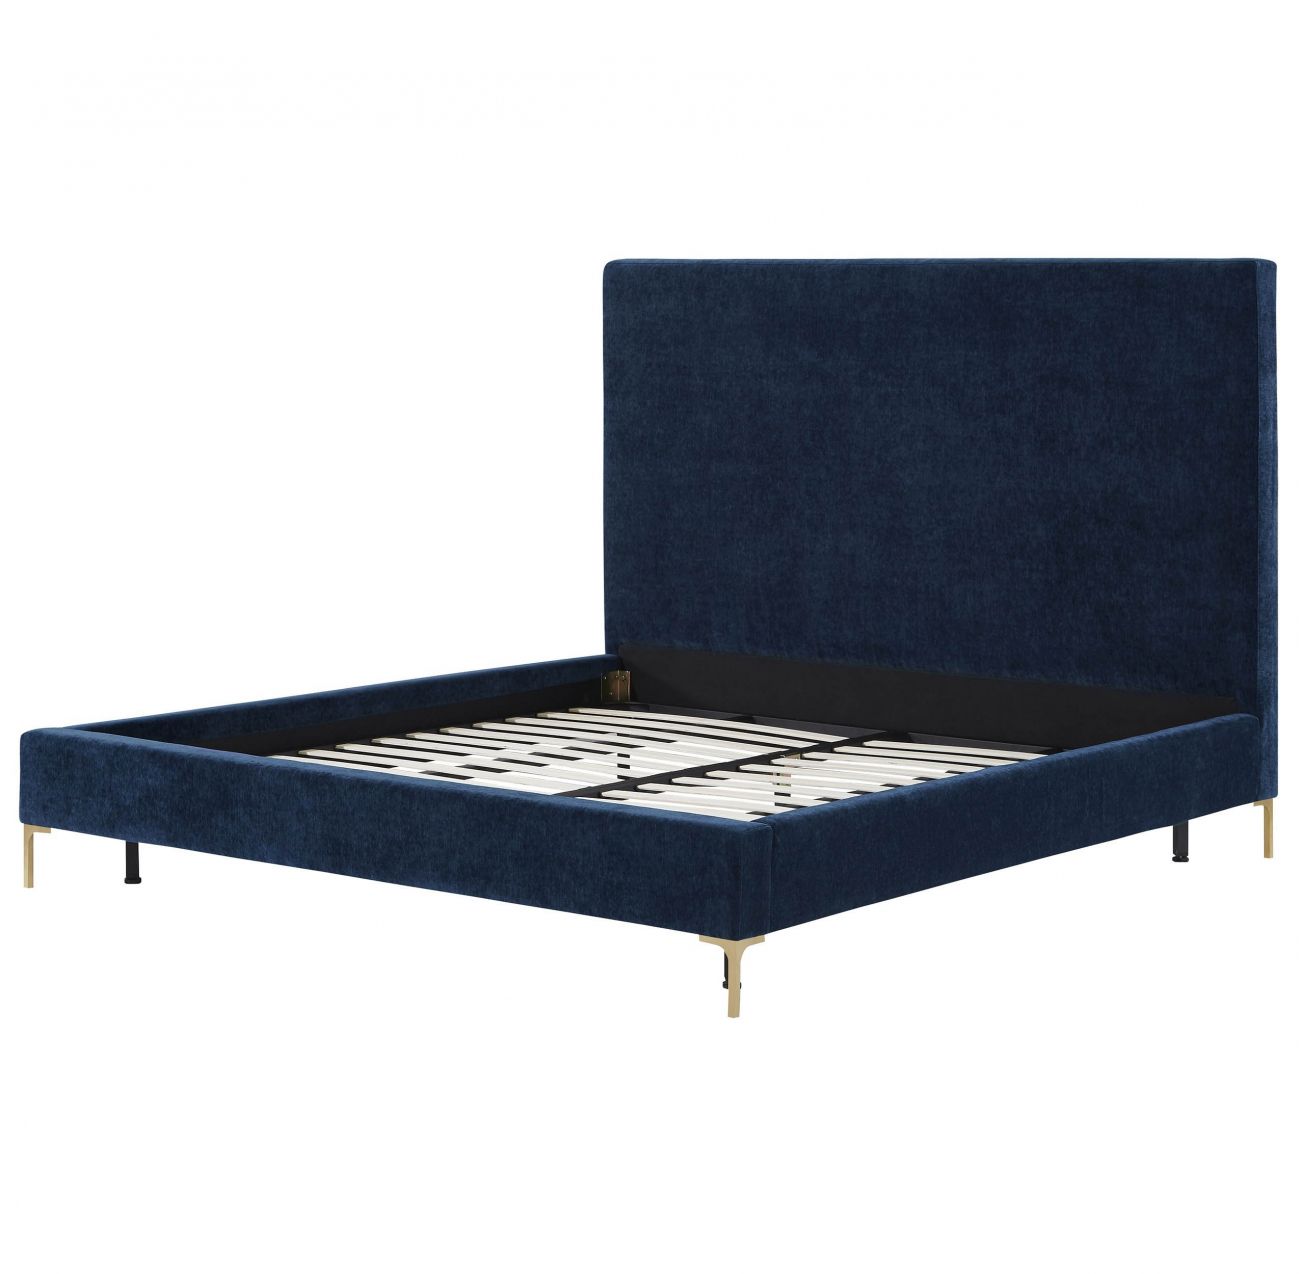 Кровать двуспальная 160х200 см синяя Mark